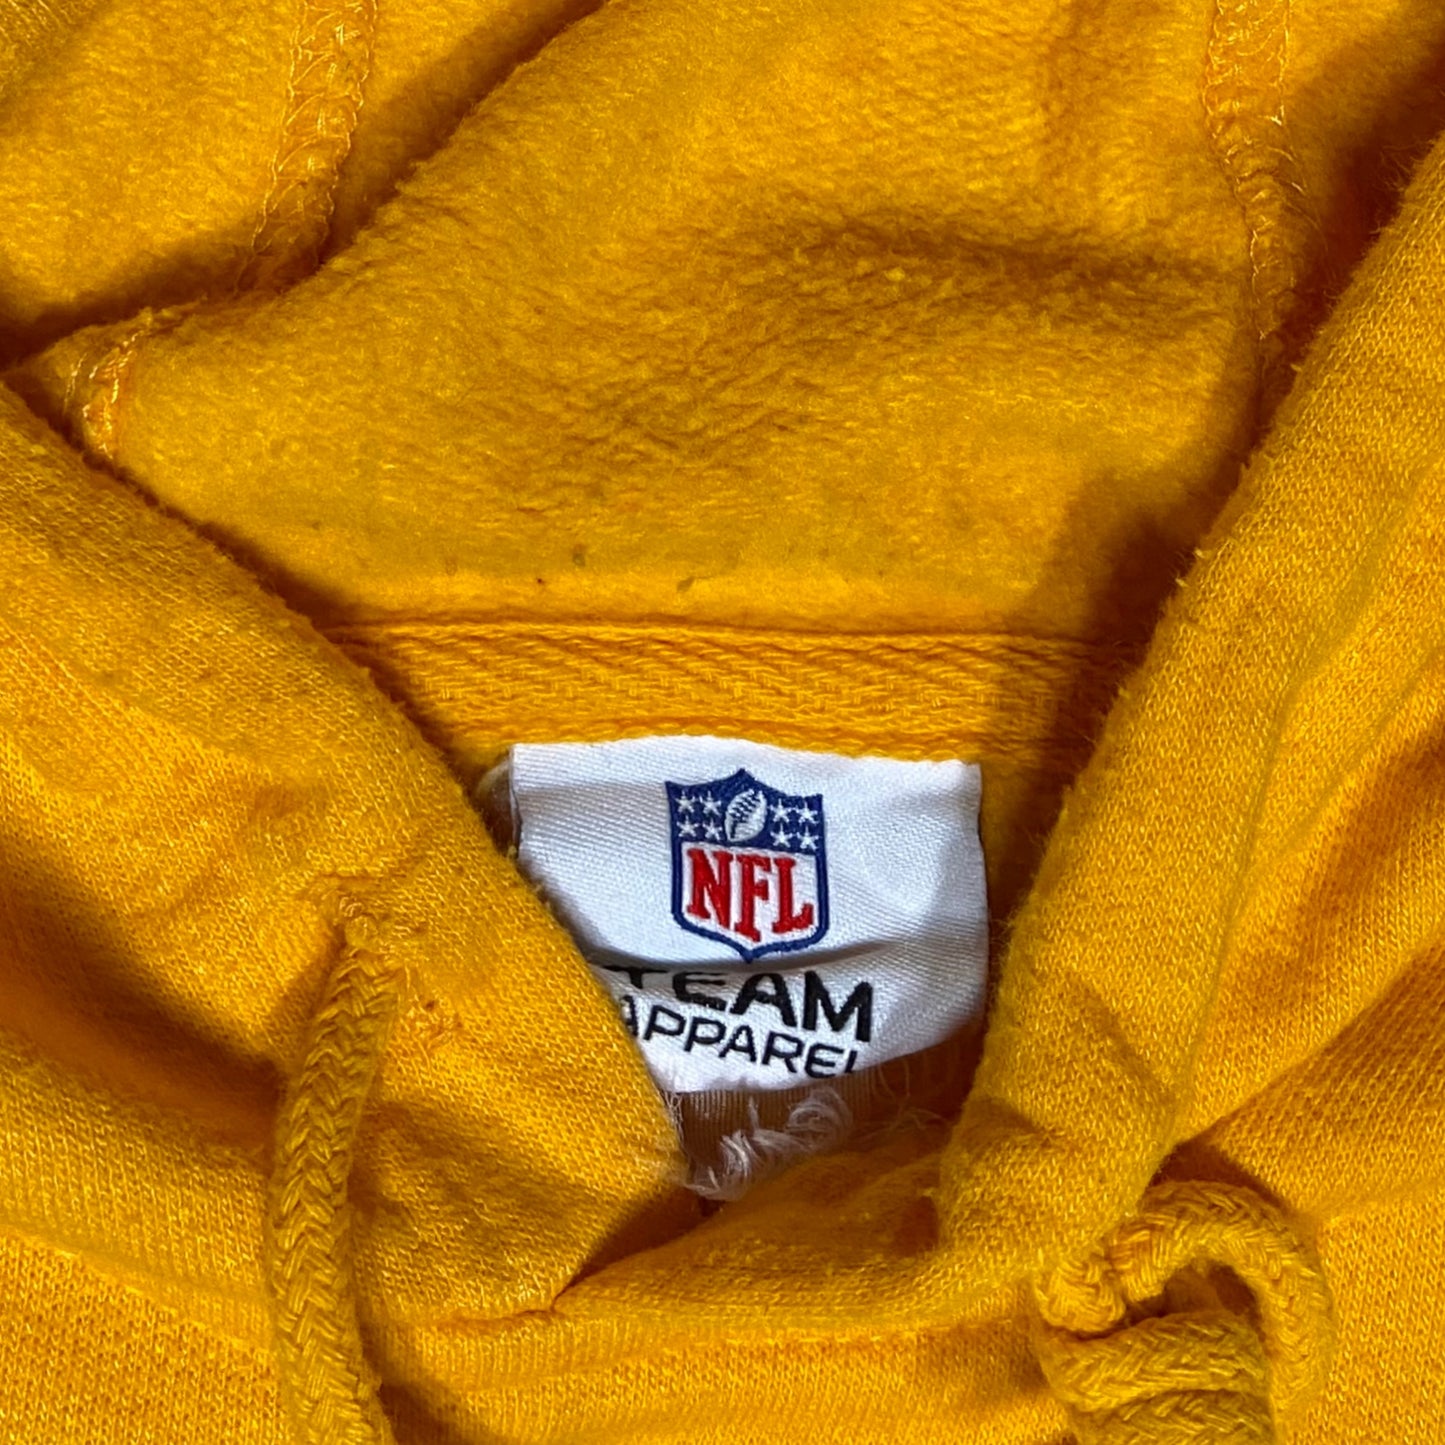 Green Bay Packers hoodie - XL